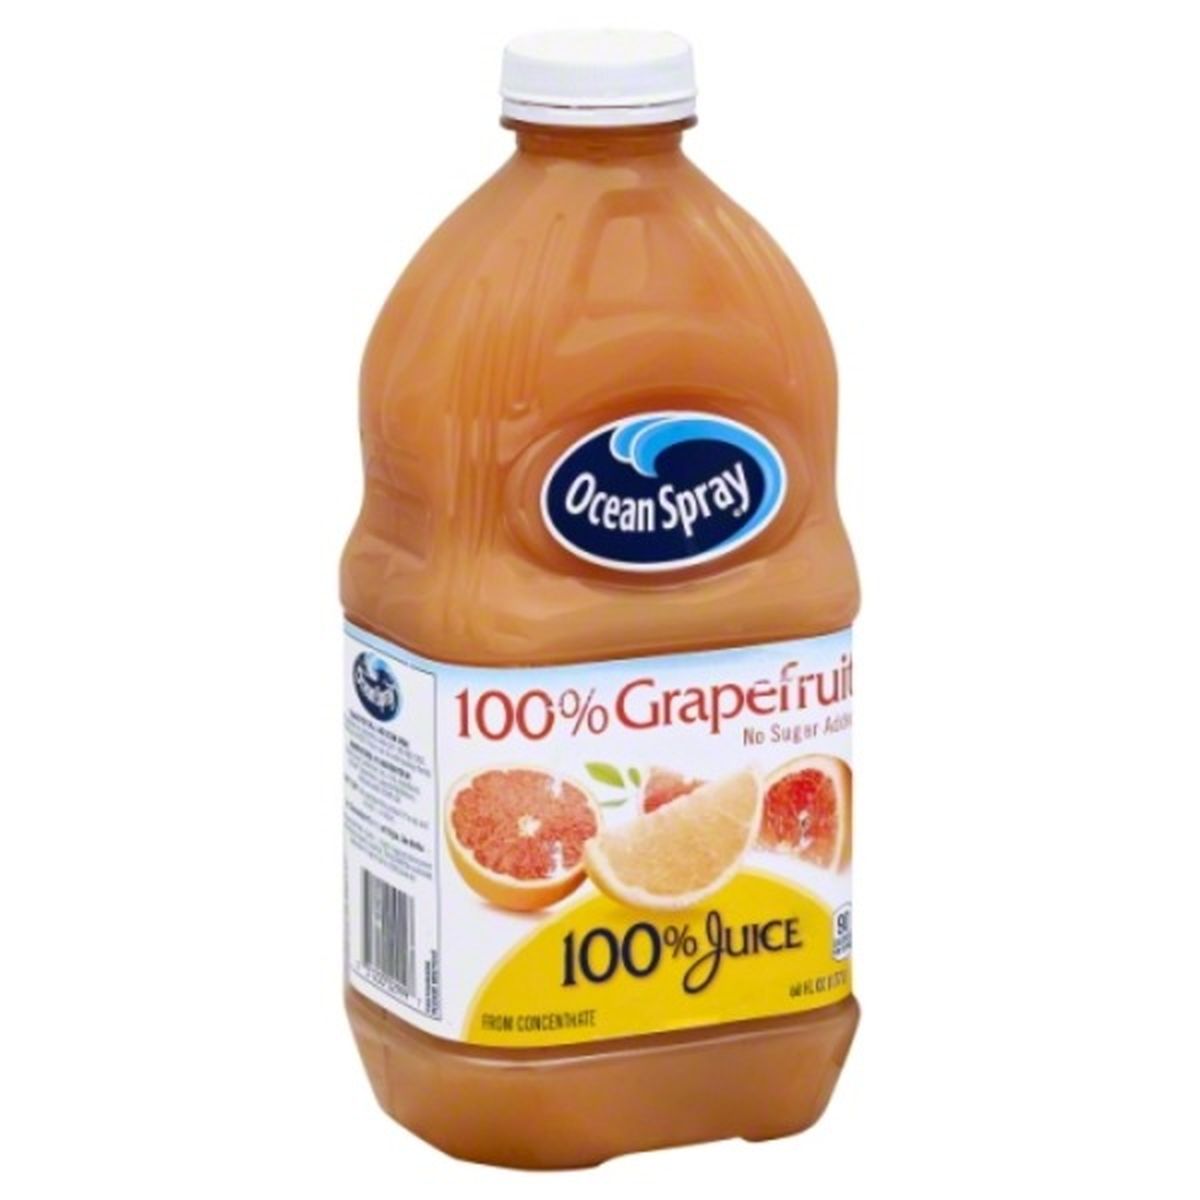 Calories in Ocean Spray 100% Juice, 100% Grapefruit